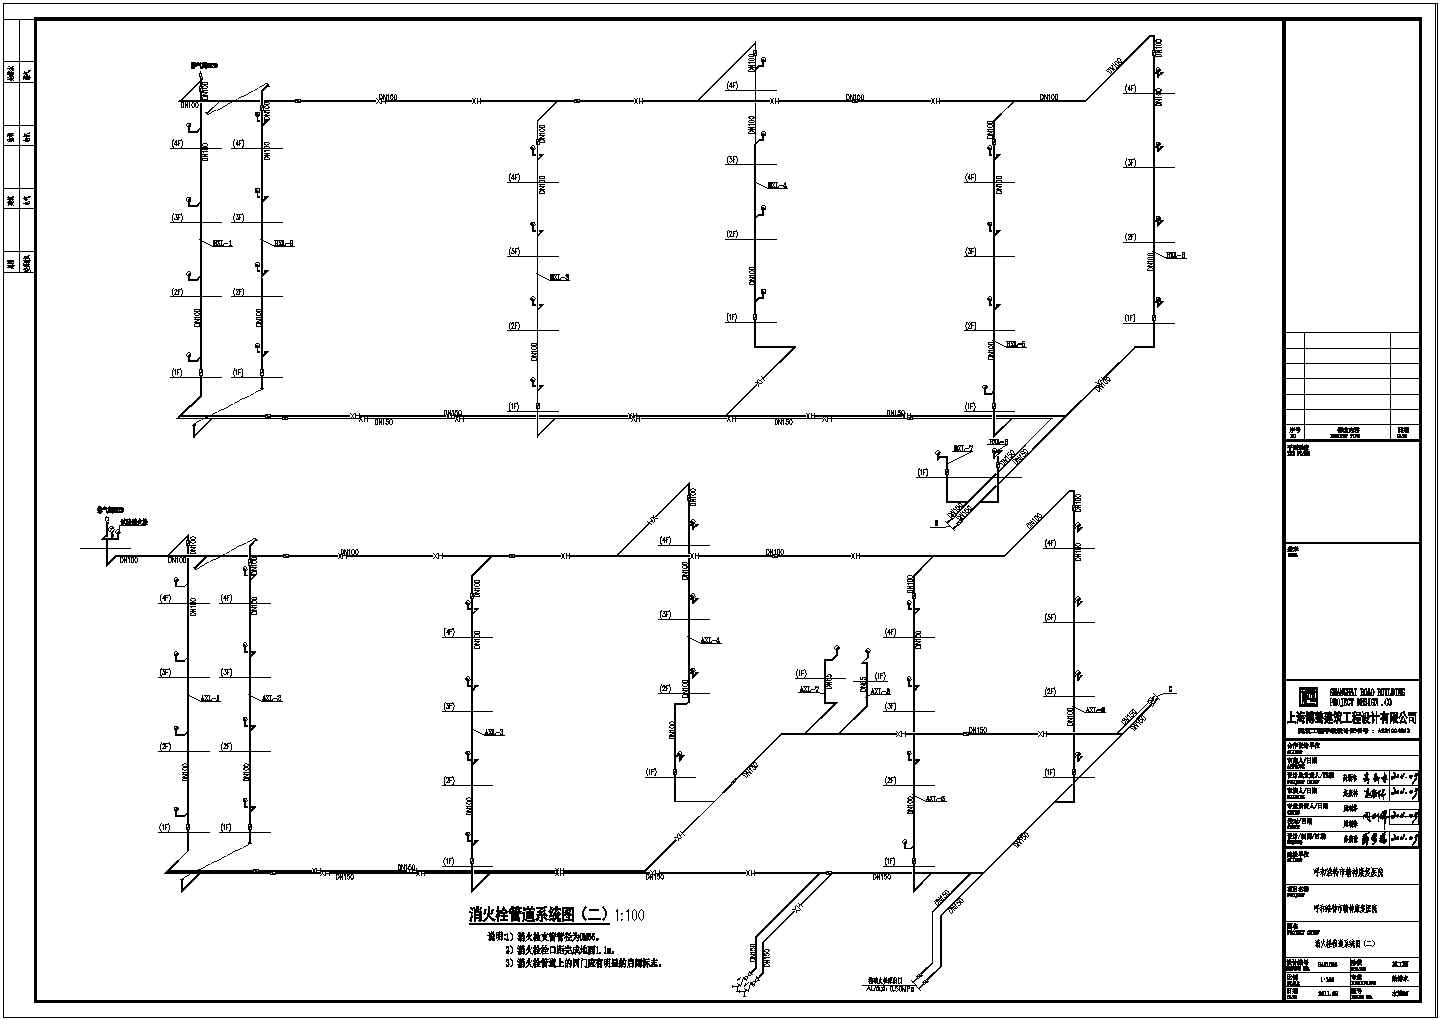 37-消火栓管道系统图（二）